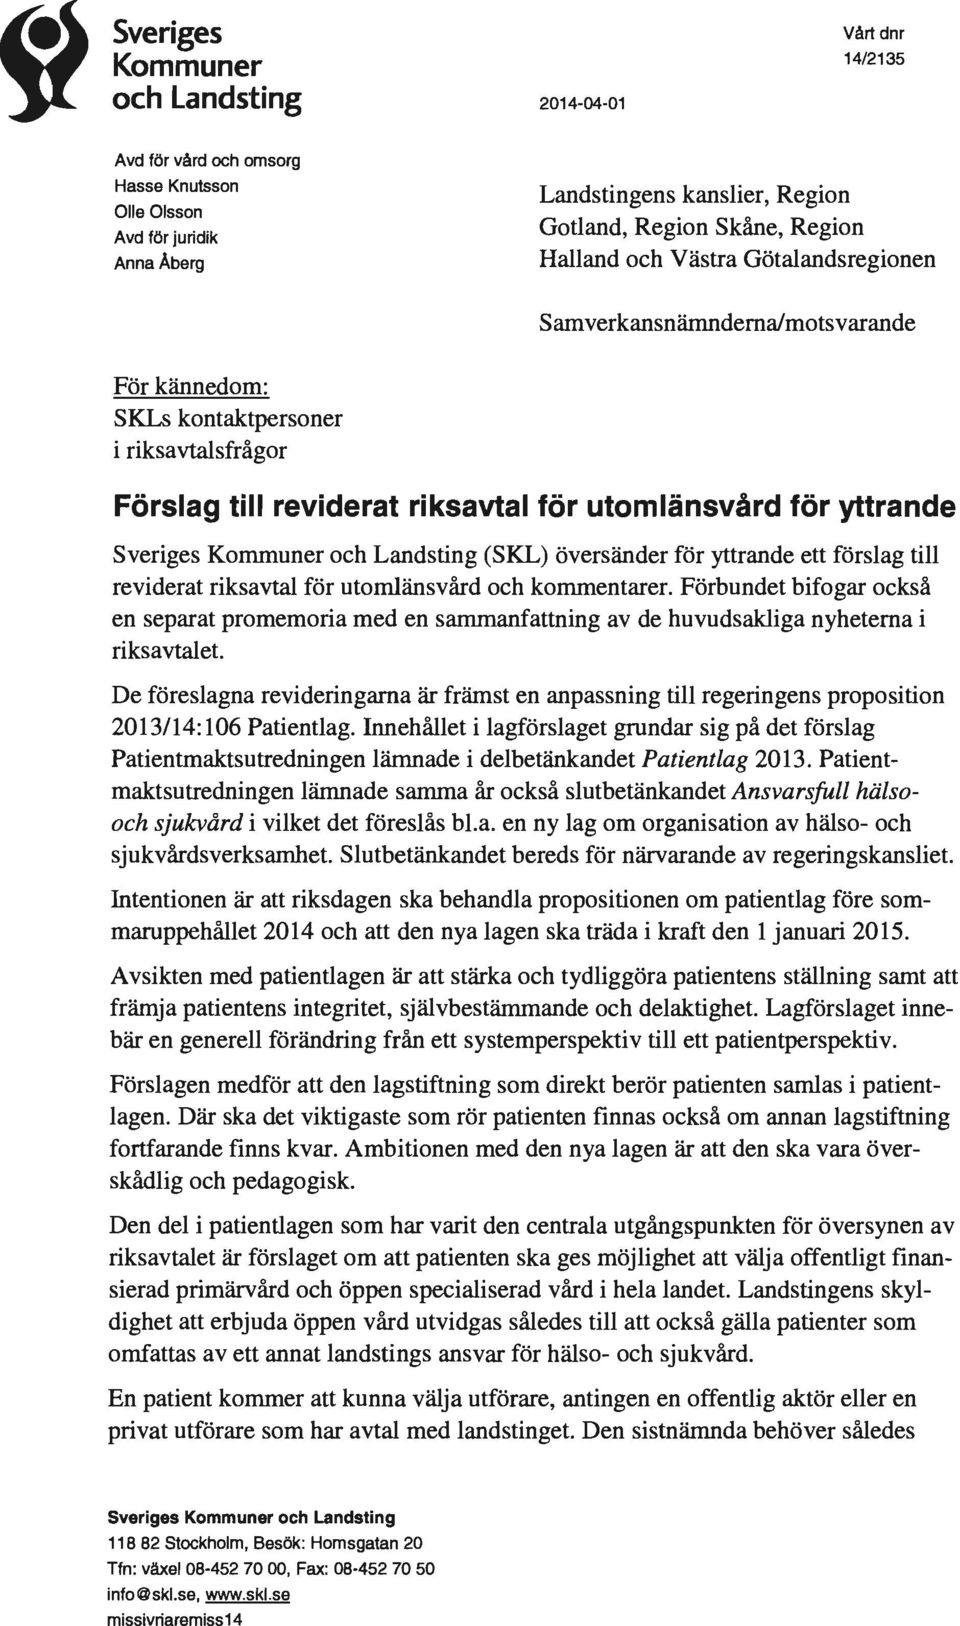 Kommuner och Landsting (SKL) översänder för yttrande ett förslag till reviderat riksavtal för utomlänsvård och kommentarer.